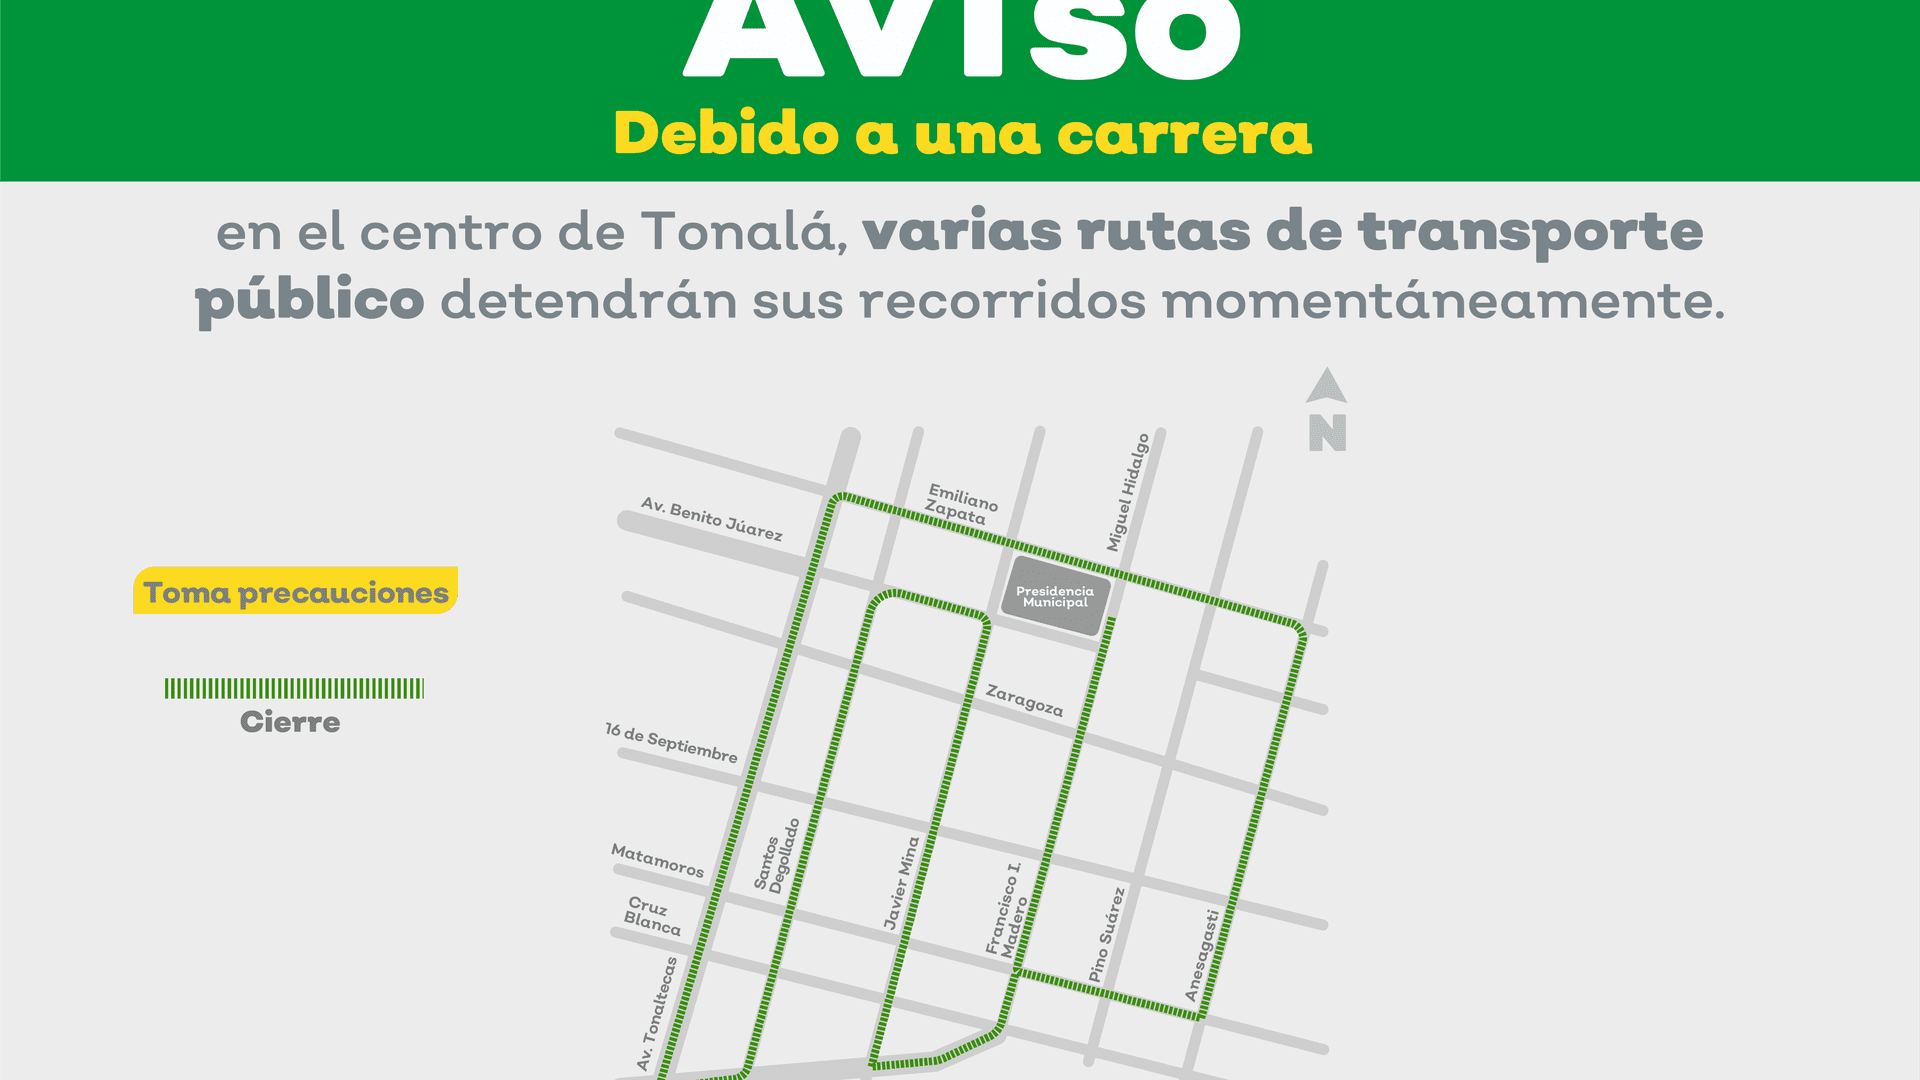 Por carrera deportiva en el centro de Tonalá, varias rutas del transporte público detendrán su recorrido momentáneamente